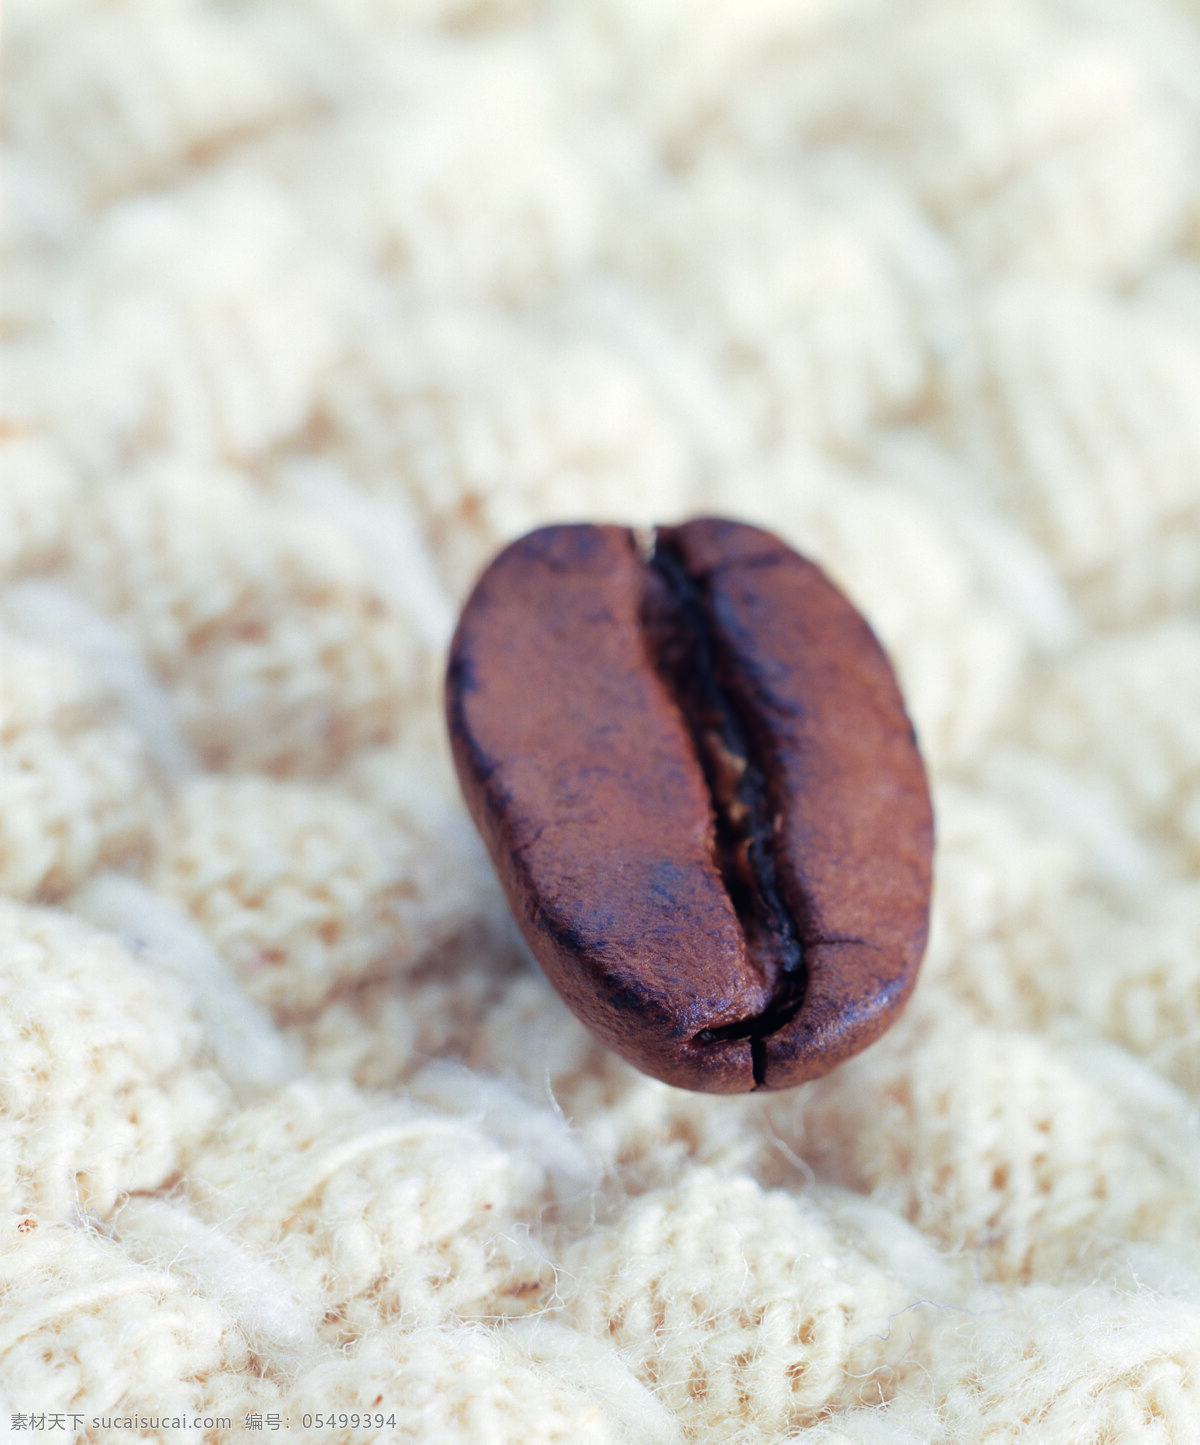 毛毯 上 咖啡豆 特写 颗粒 饱满 褐色 杯子 咖啡 咖啡原料 高清图片 咖啡图片 餐饮美食